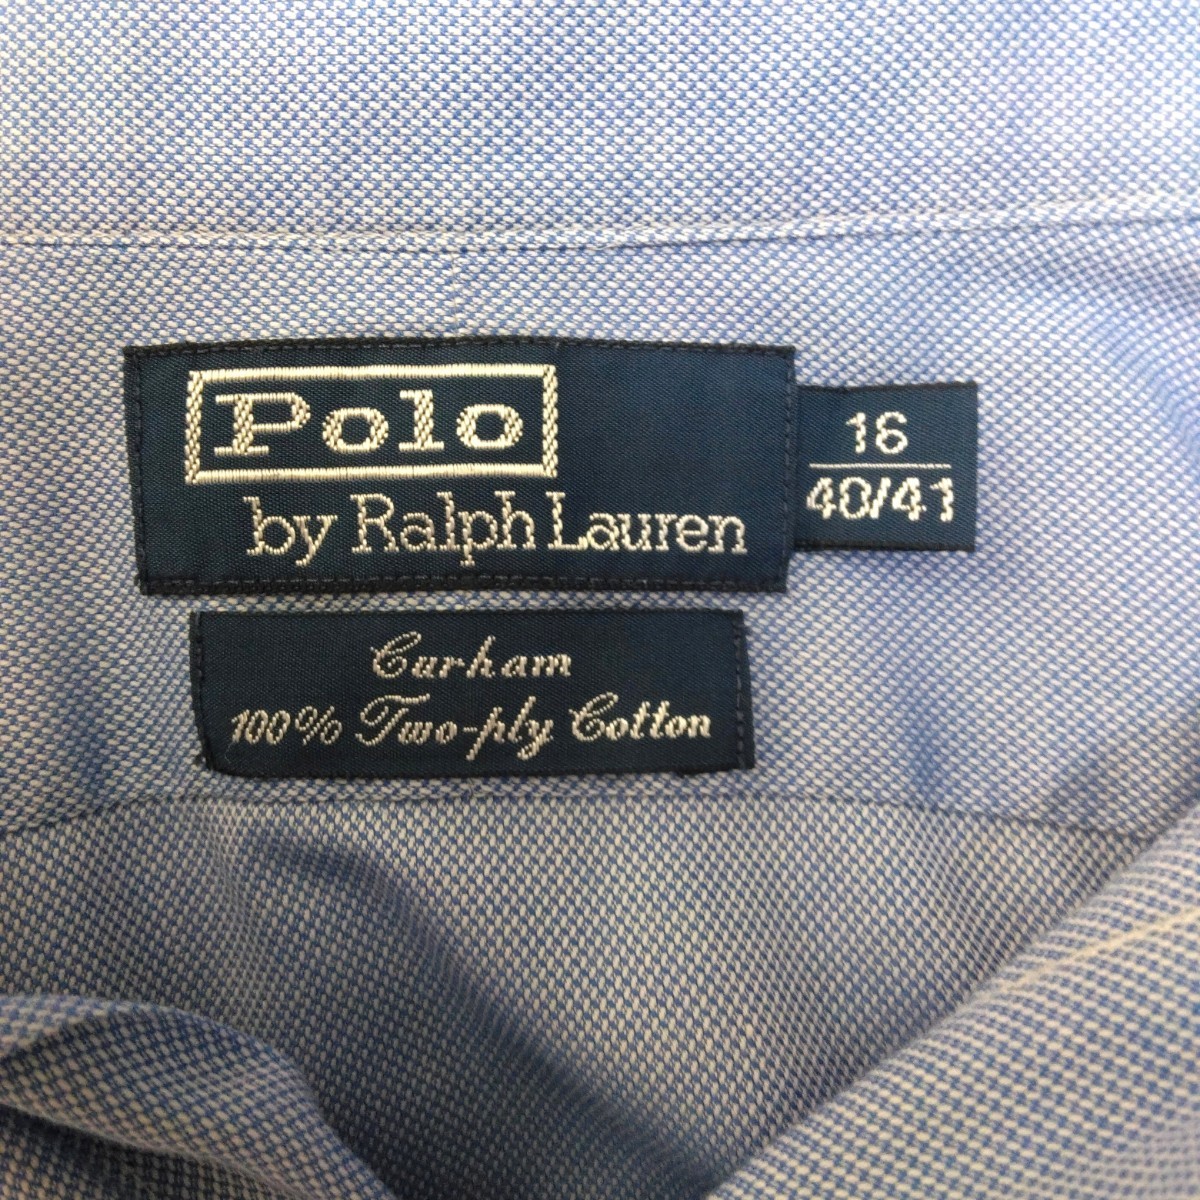 Polo by Ralph Lauren ポロバイラルフローレン 長袖 ドレスシャツ ライトブルー系 メンズ Lサイズ相当の画像4